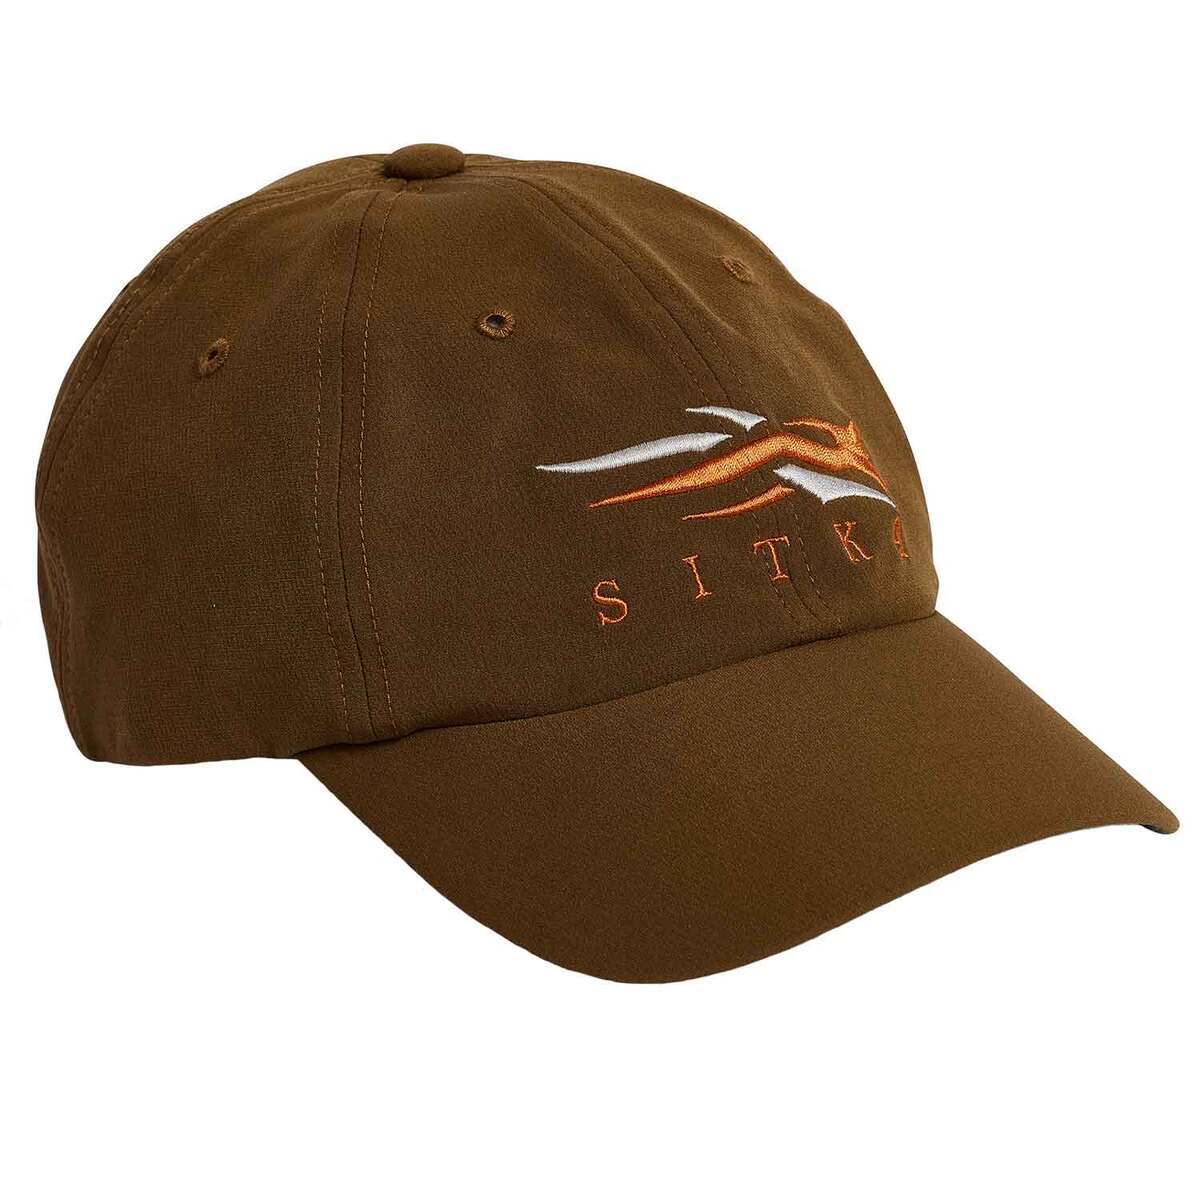 Costa Del Mar Men's Navy Maverick Flat Brim Snapback Hat Cap New